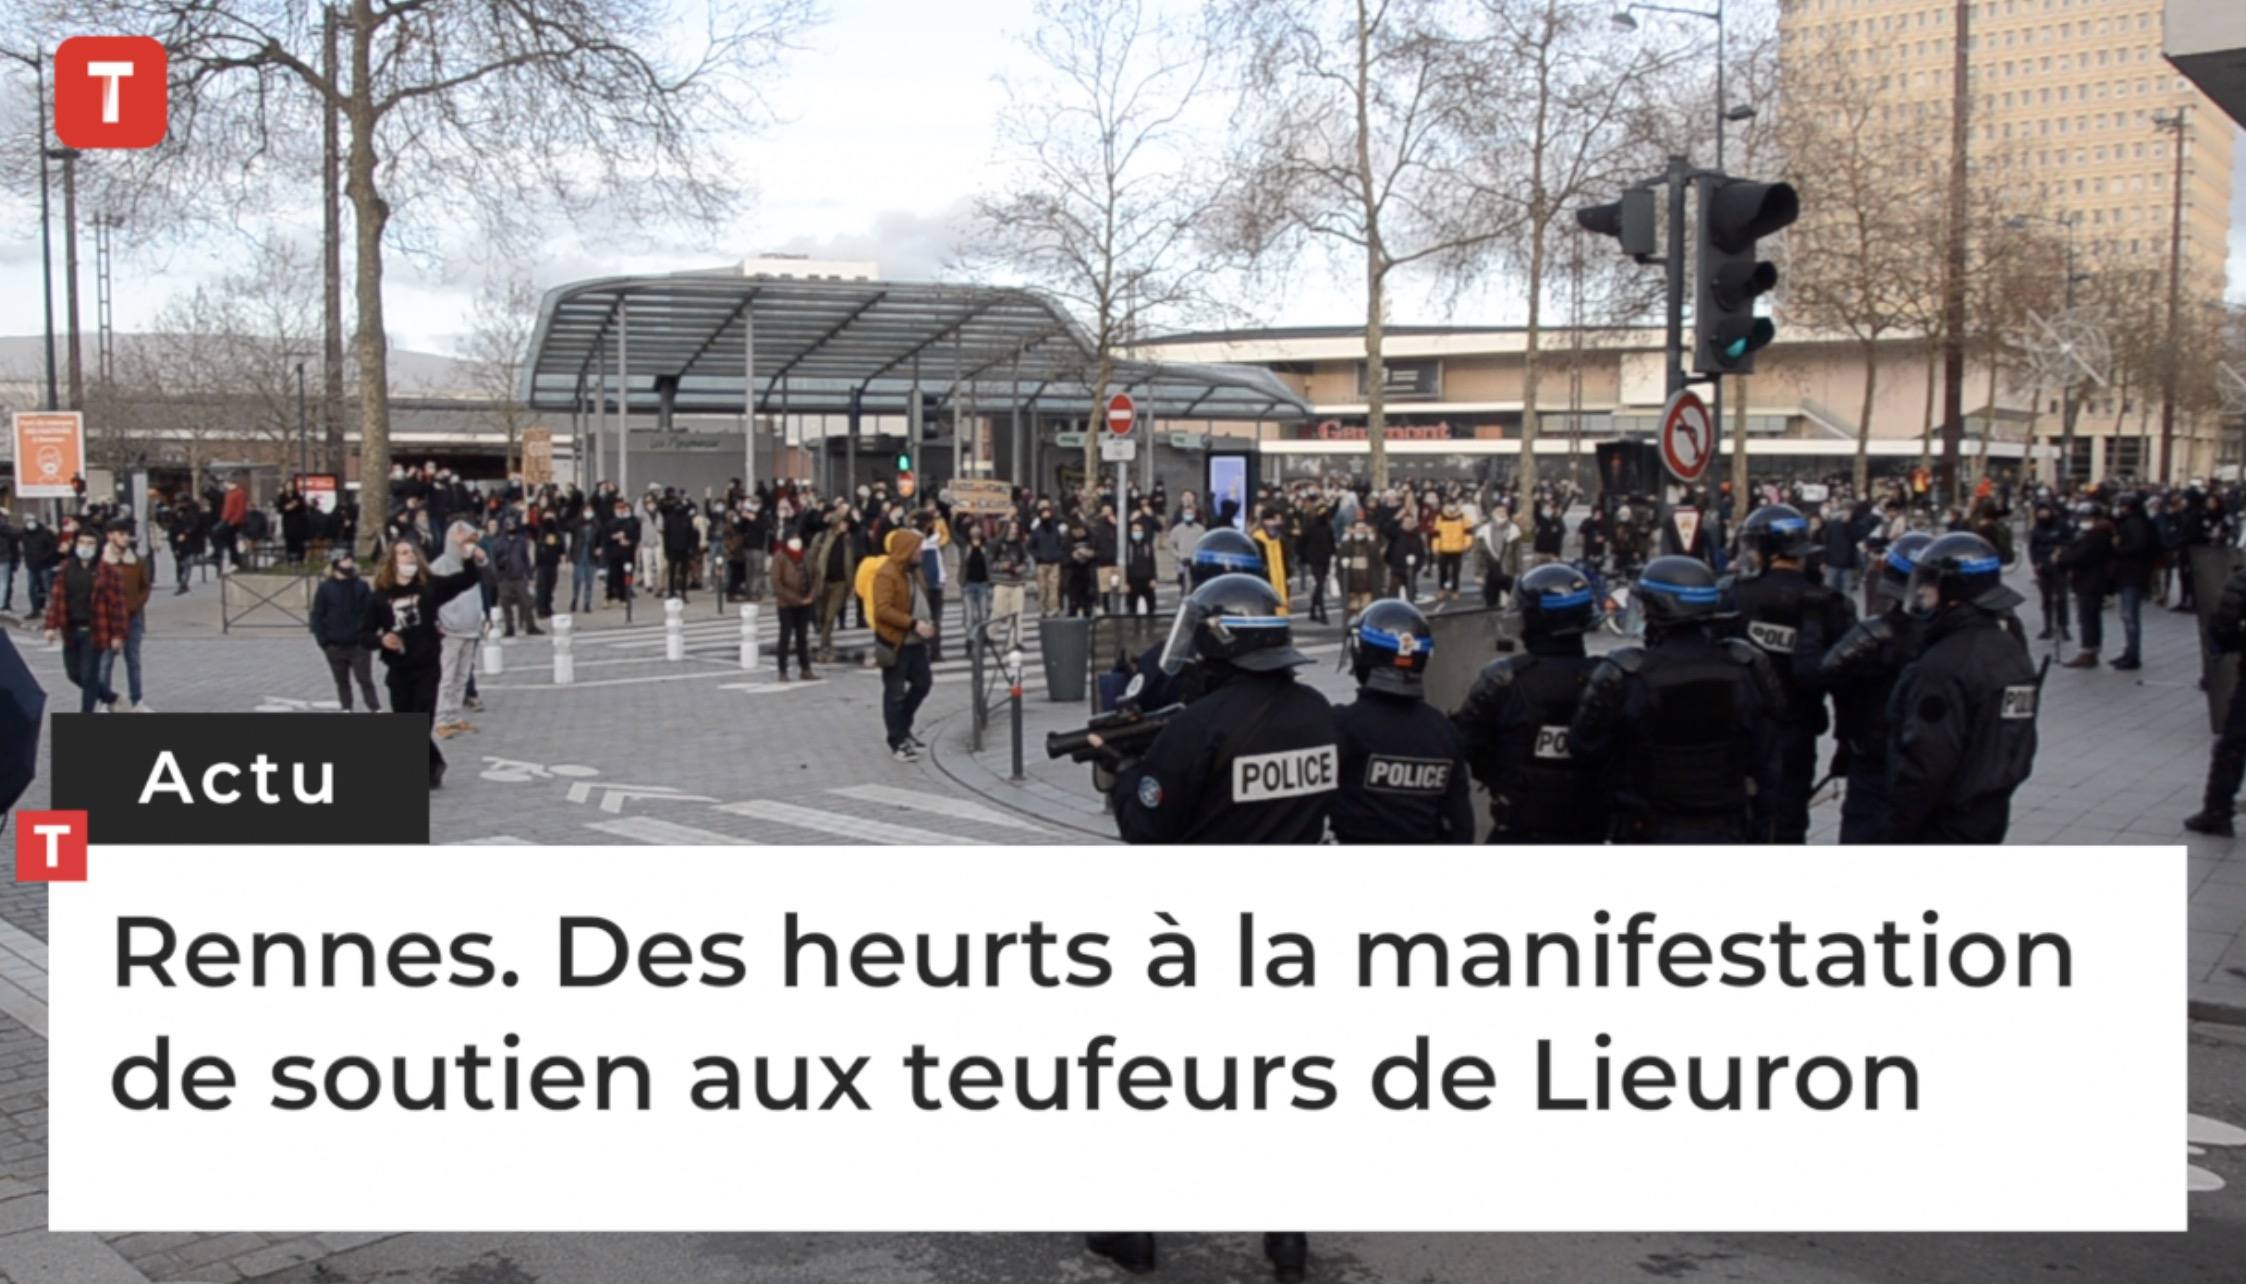 Rennes. Des heurts à la manifestation de soutien aux teufeurs de Lieuron (Le Télégramme)